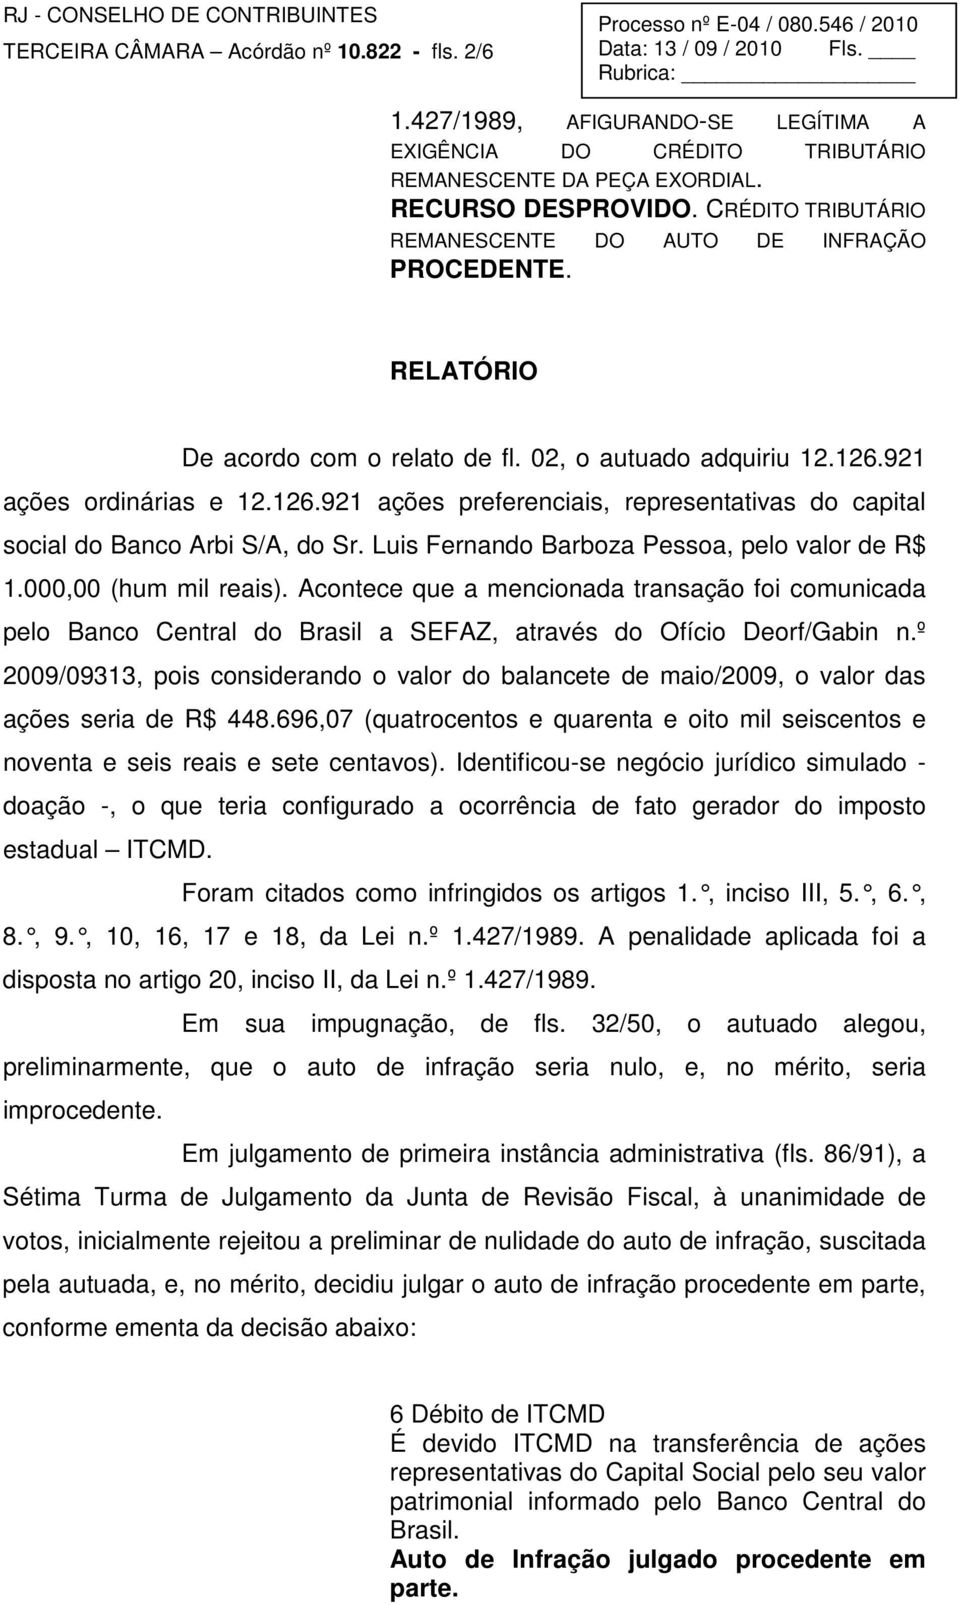 921 ações ordinárias e 12.126.921 ações preferenciais, representativas do capital social do Banco Arbi S/A, do Sr. Luis Fernando Barboza Pessoa, pelo valor de R$ 1.000,00 (hum mil reais).